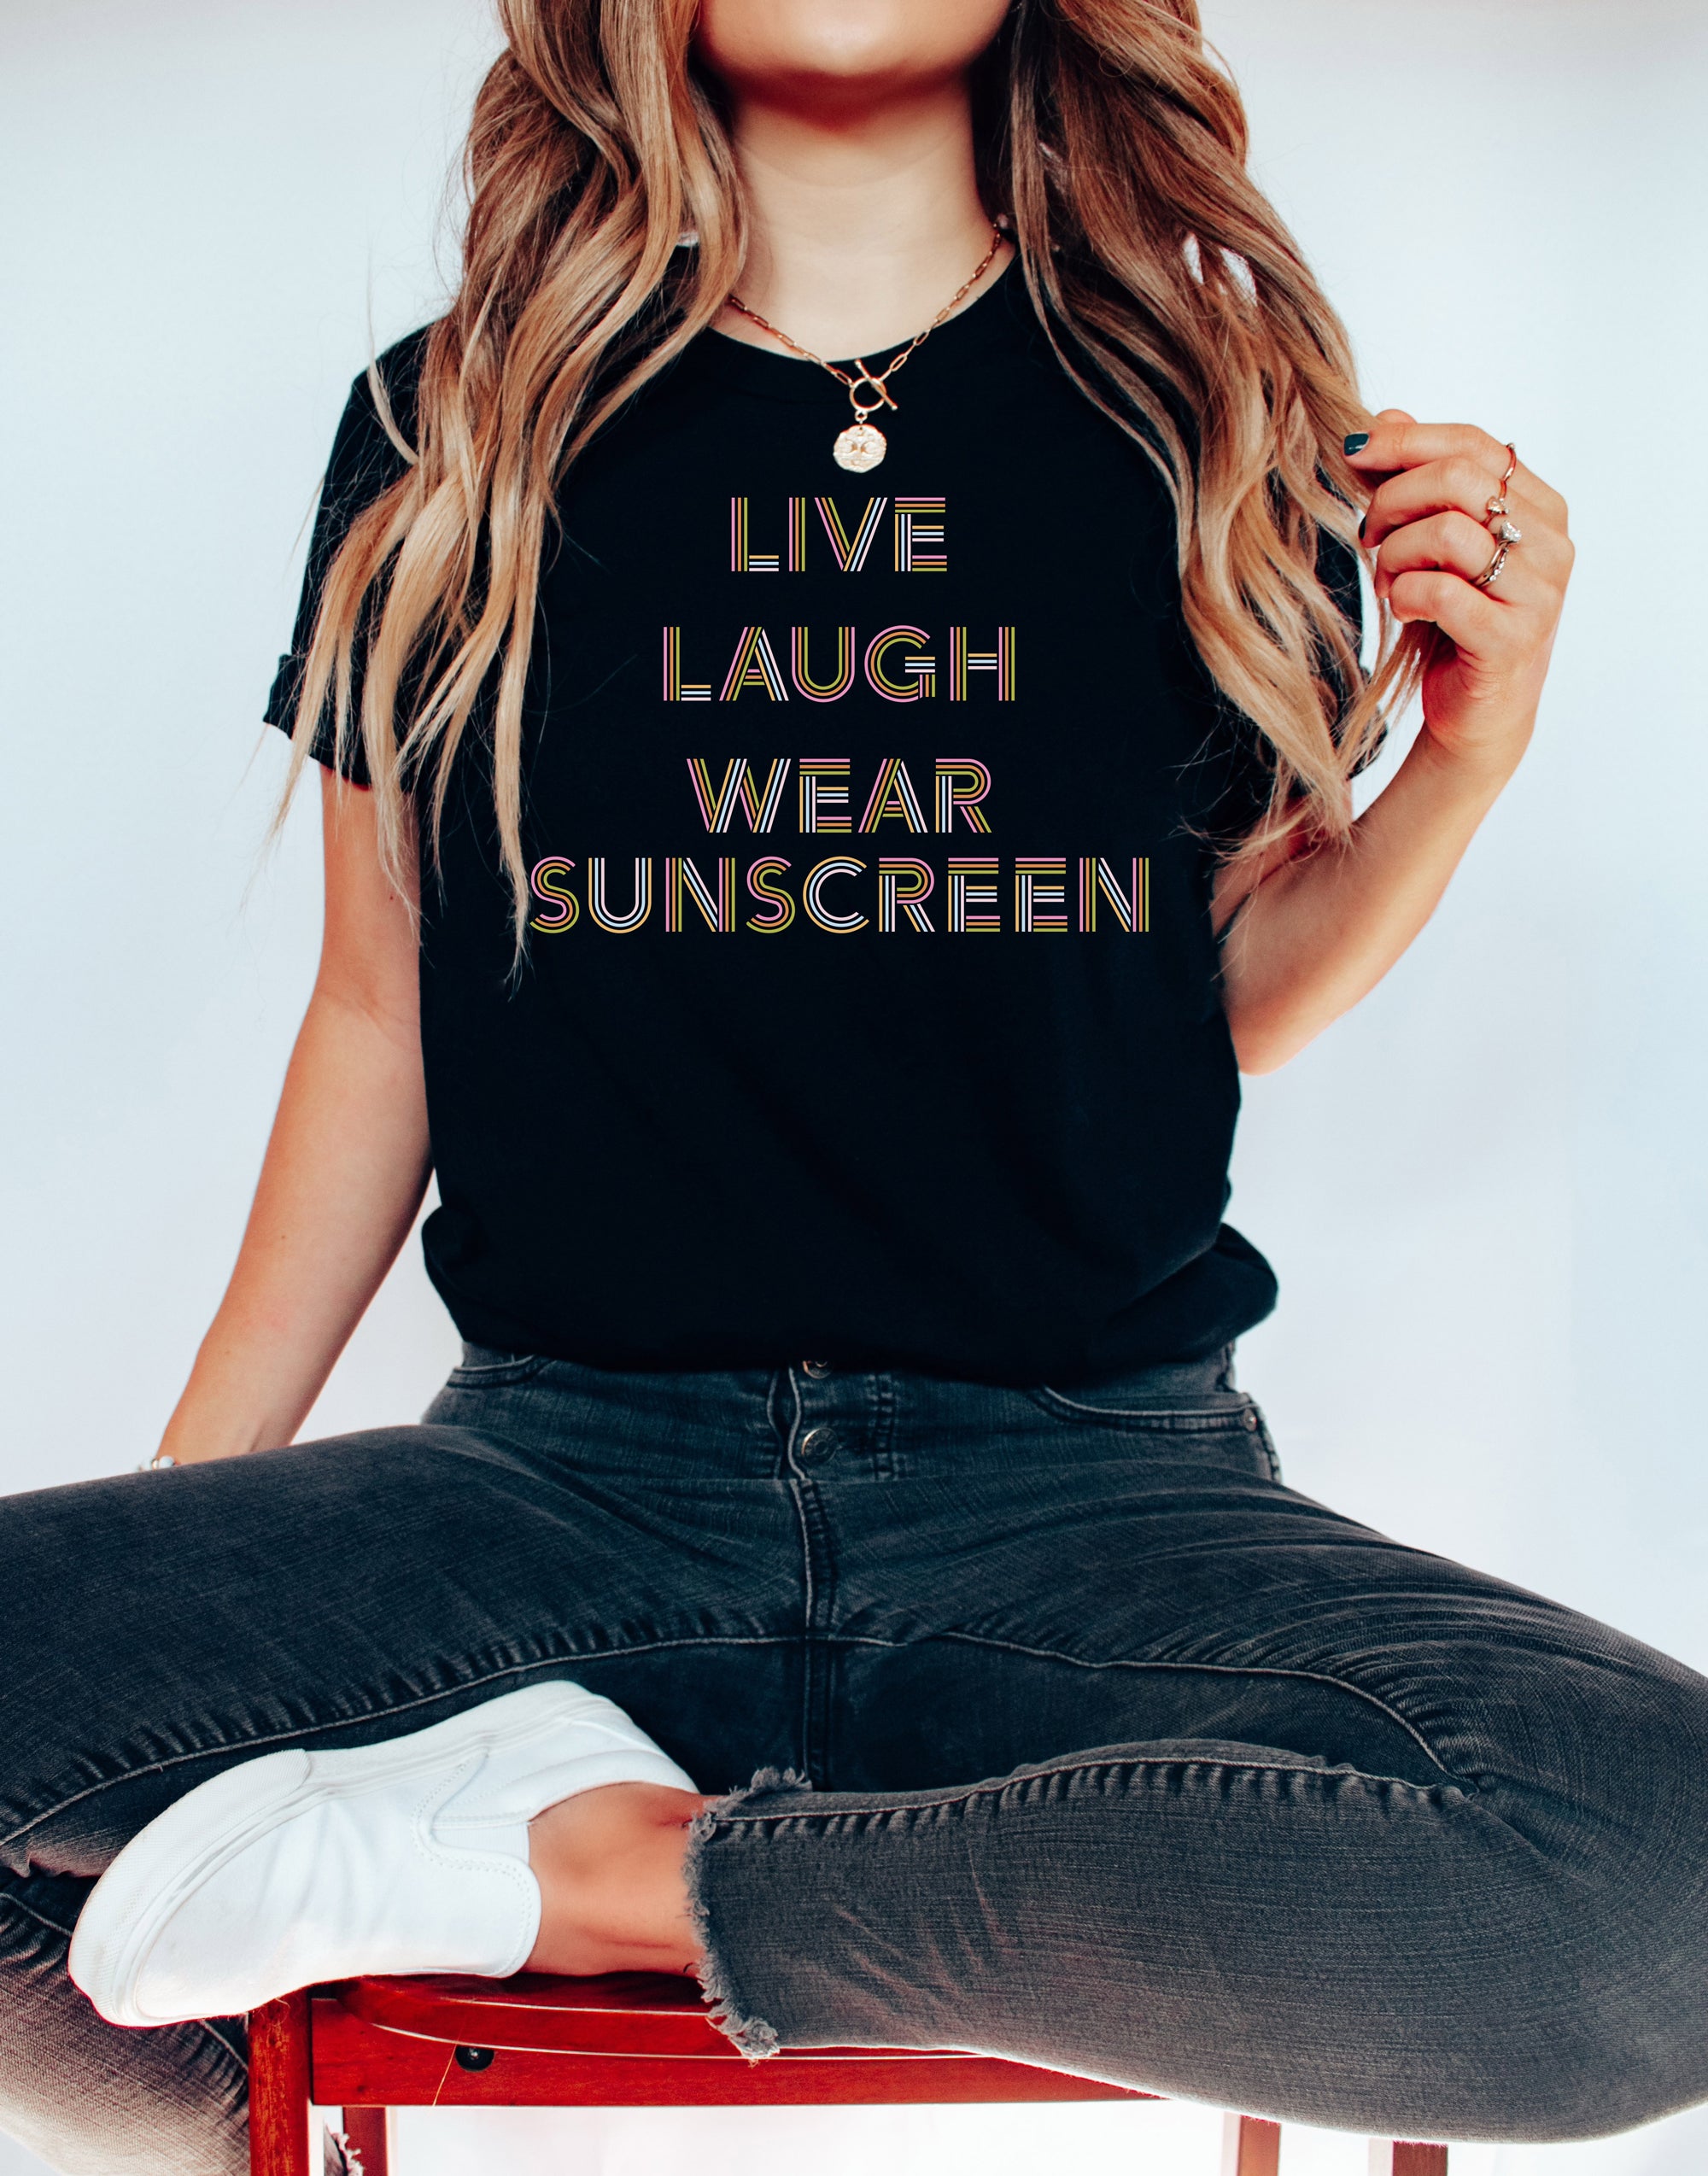 Live Laugh Wear Sunscreen Shirt - Femfetti